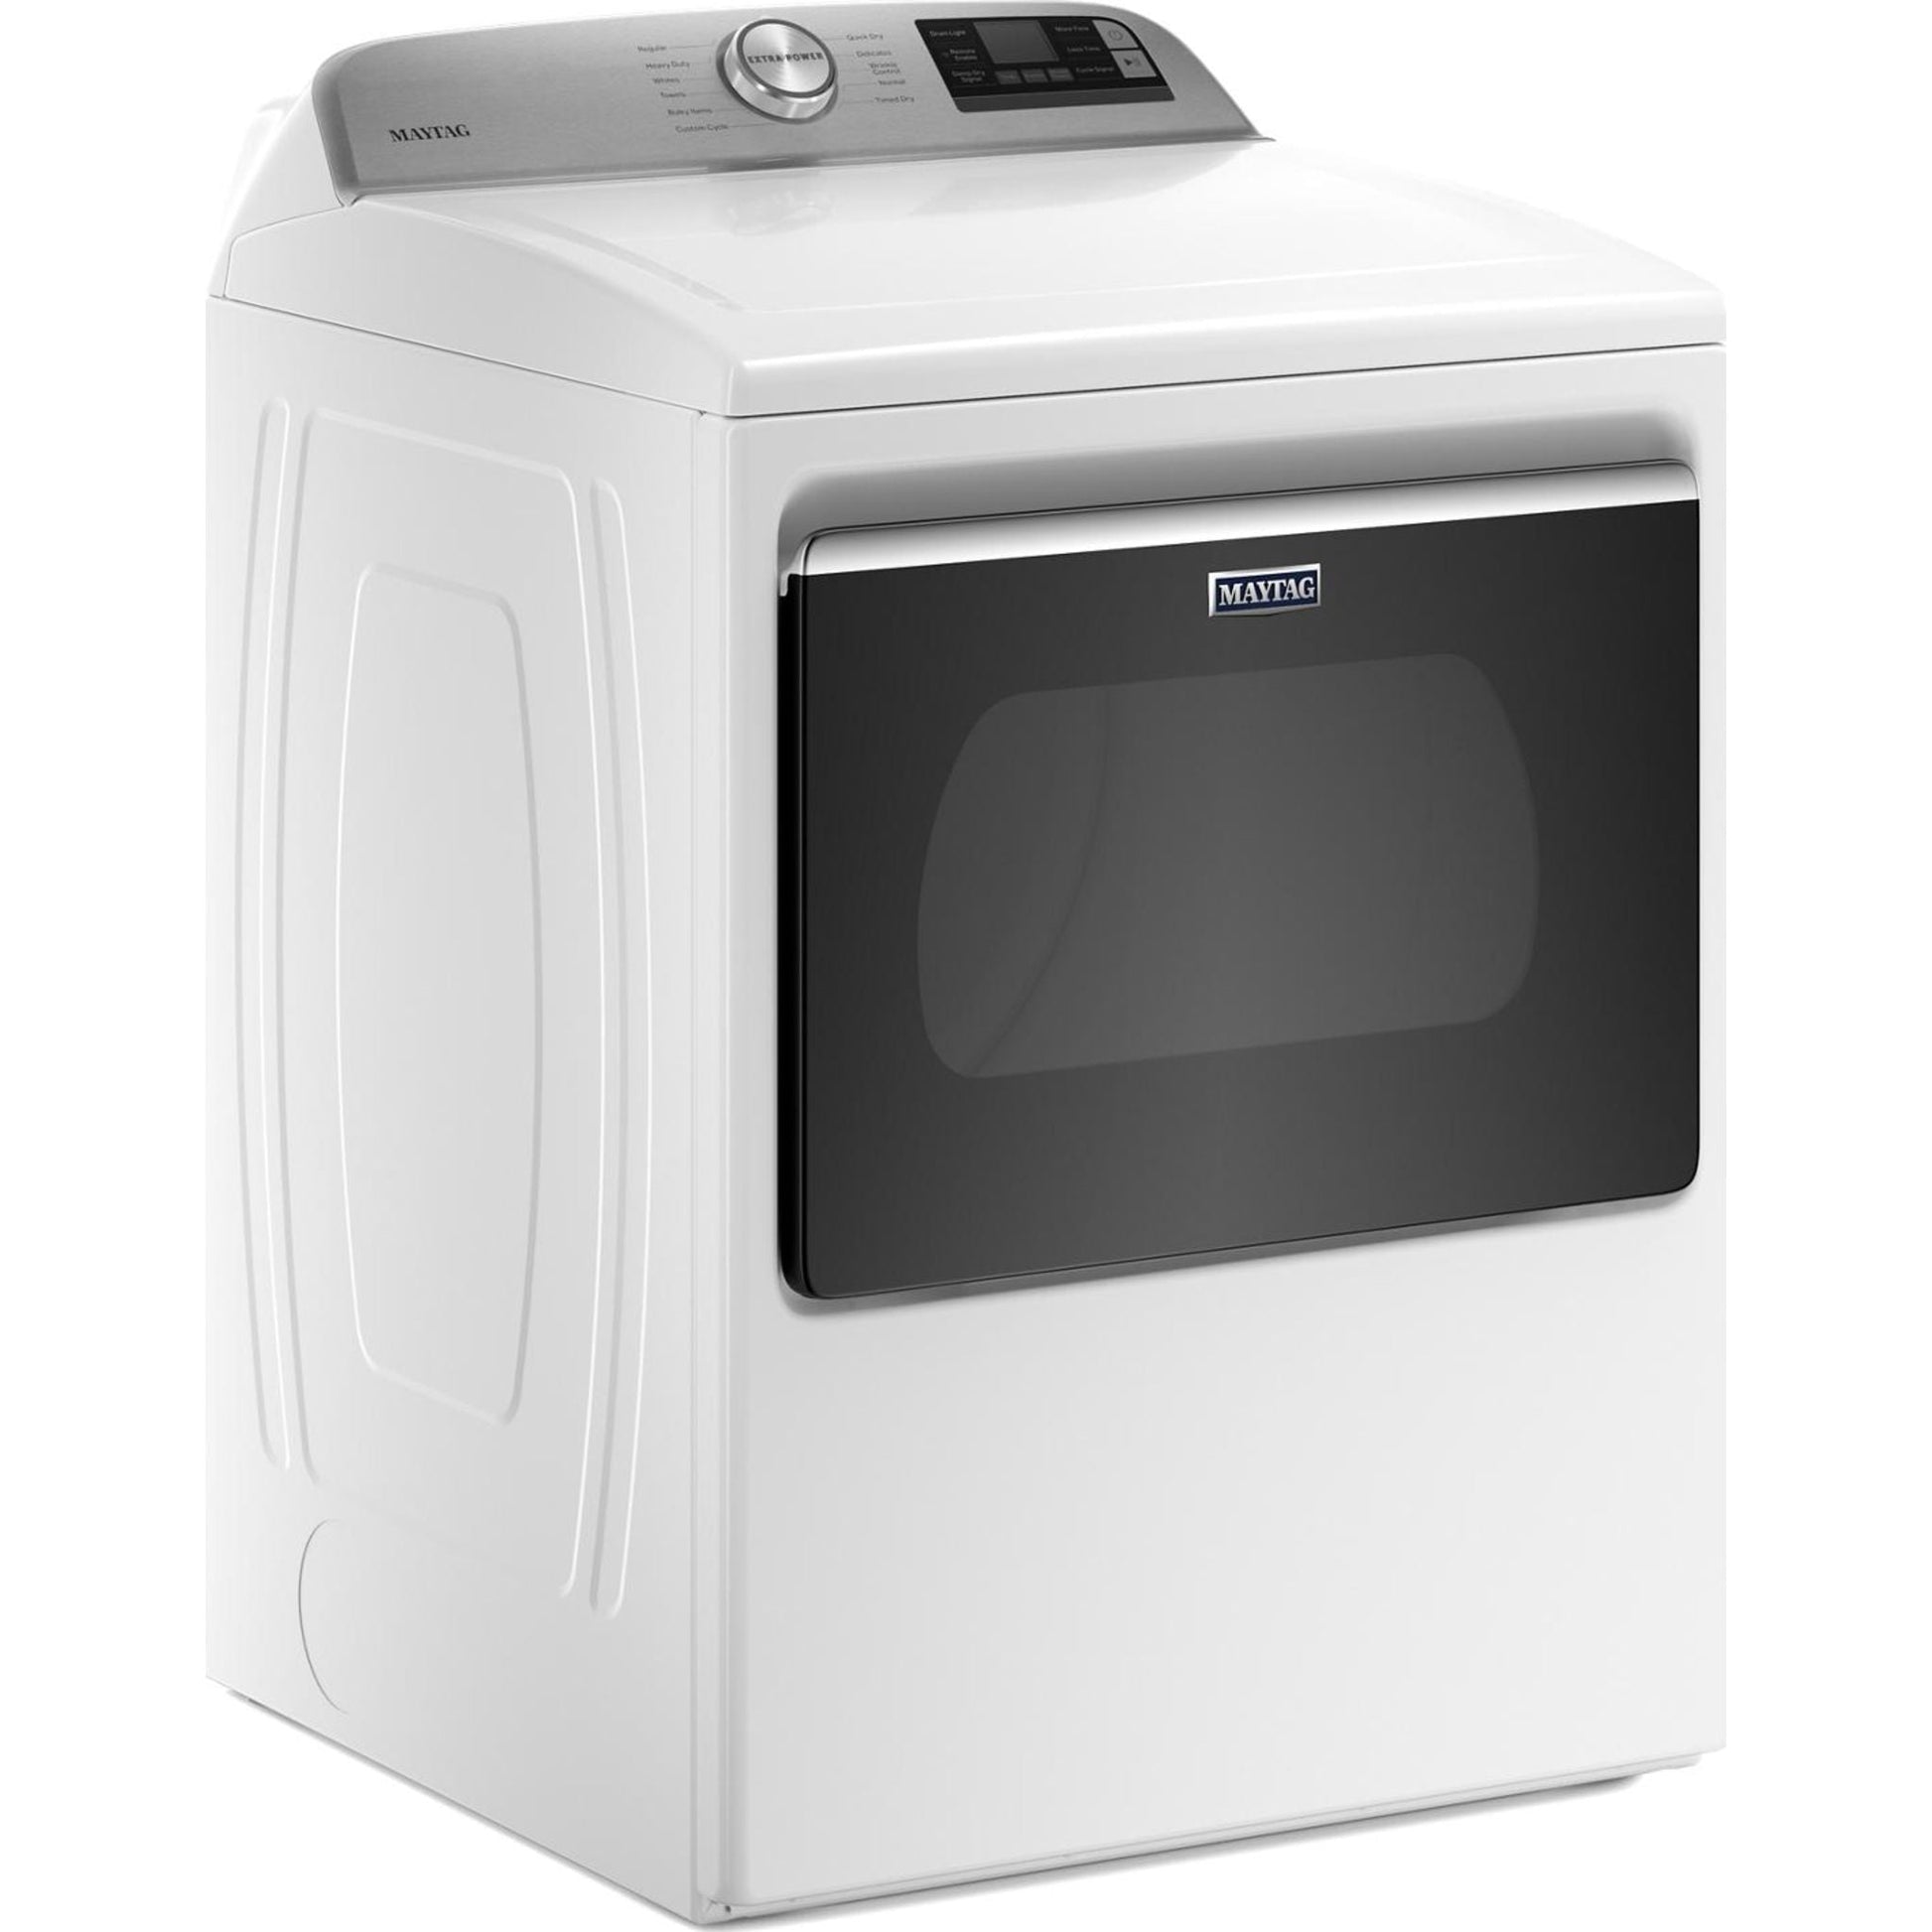 Maytag Dryer (YMED6230HW) - White